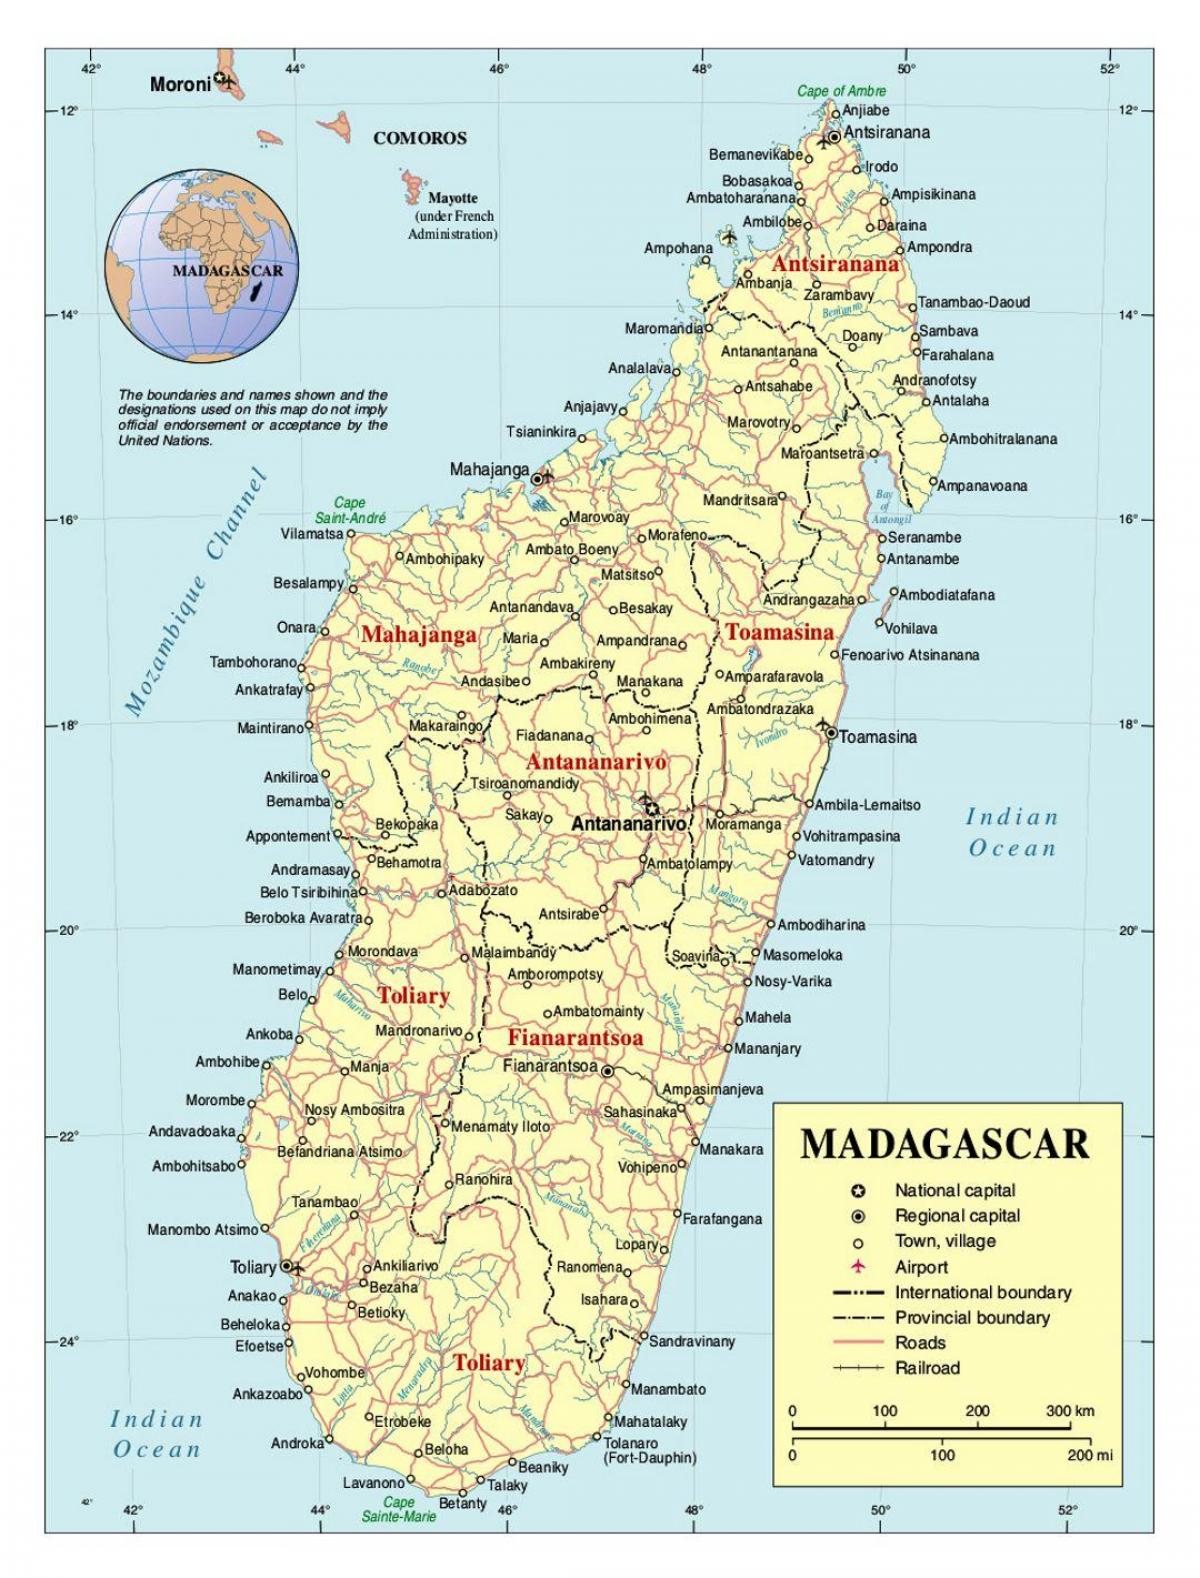 Madagaskar detaylı göster 